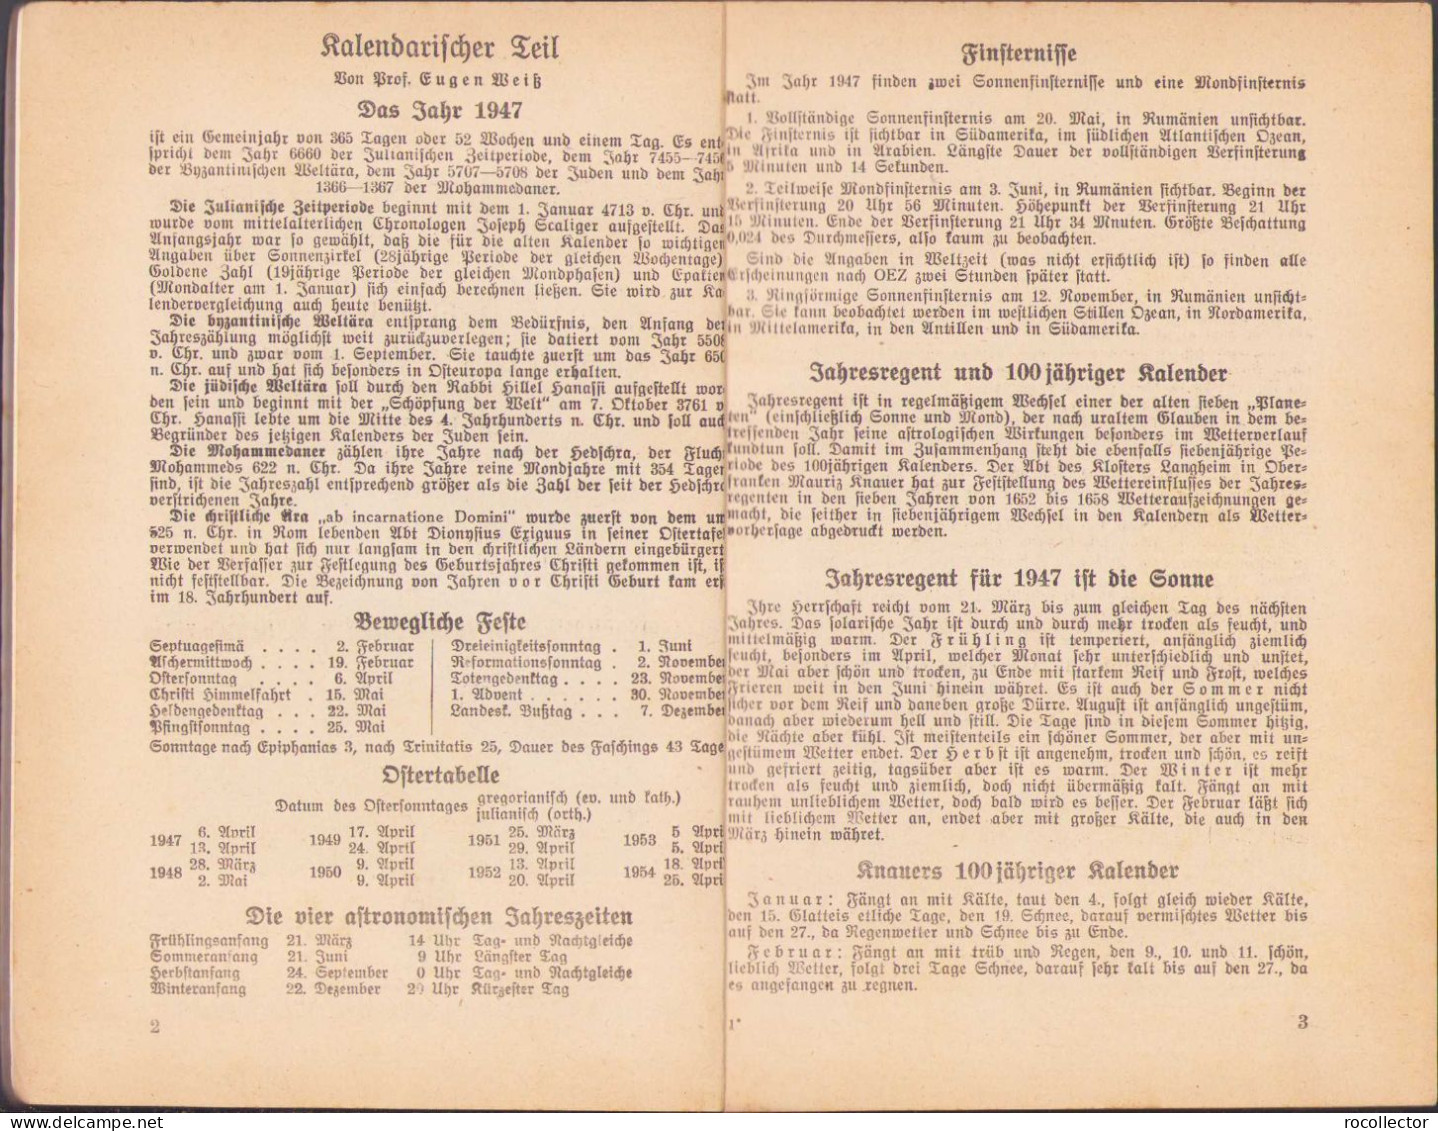 Christlicher Hausfreund Jahrbuch 1947 Hermannstadt C451 - Livres Anciens